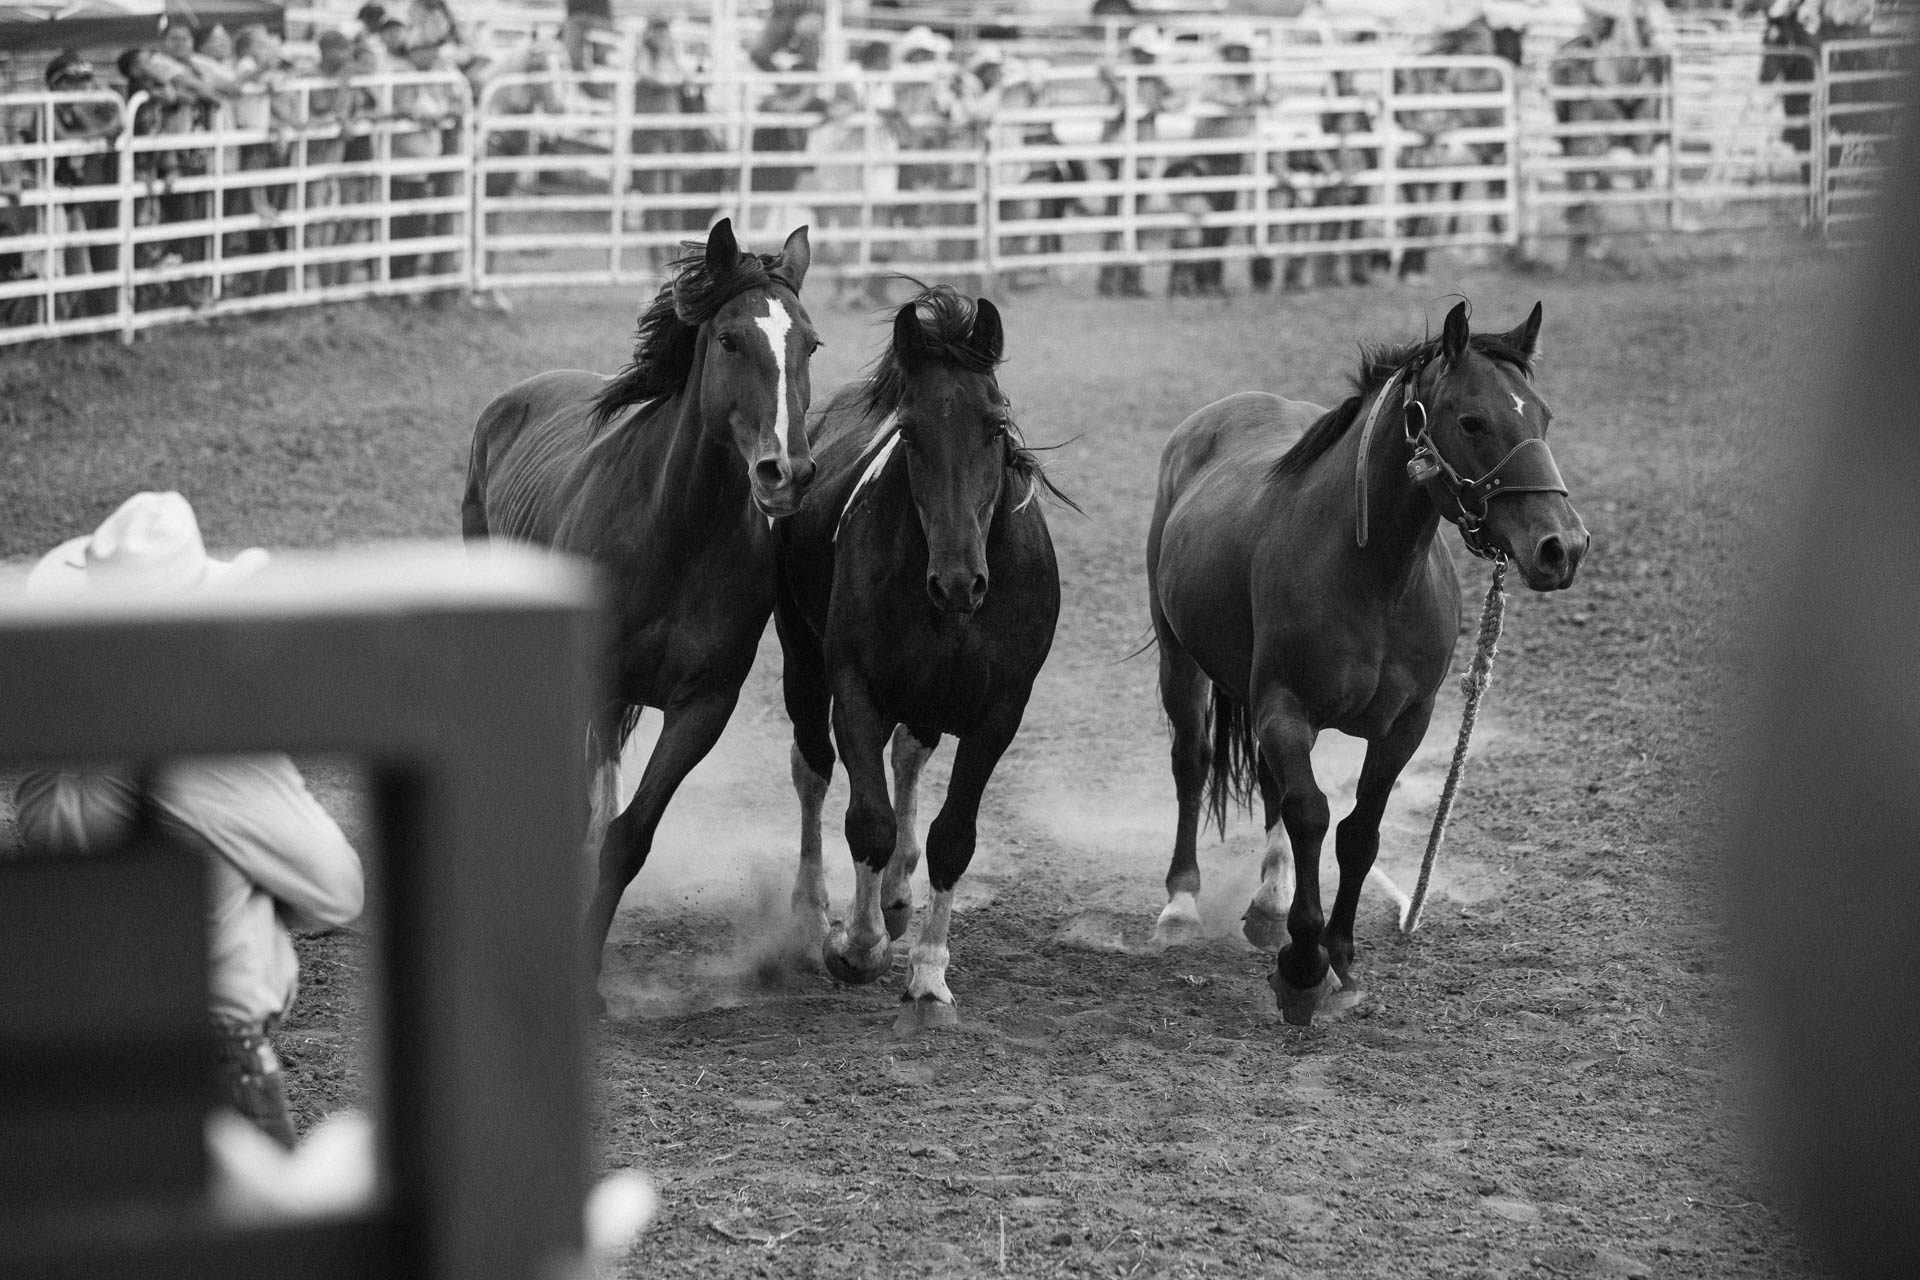 rosebud-wild-horse-three-stallions-running-together-rodeo-travis-dewitz-3943.JPG